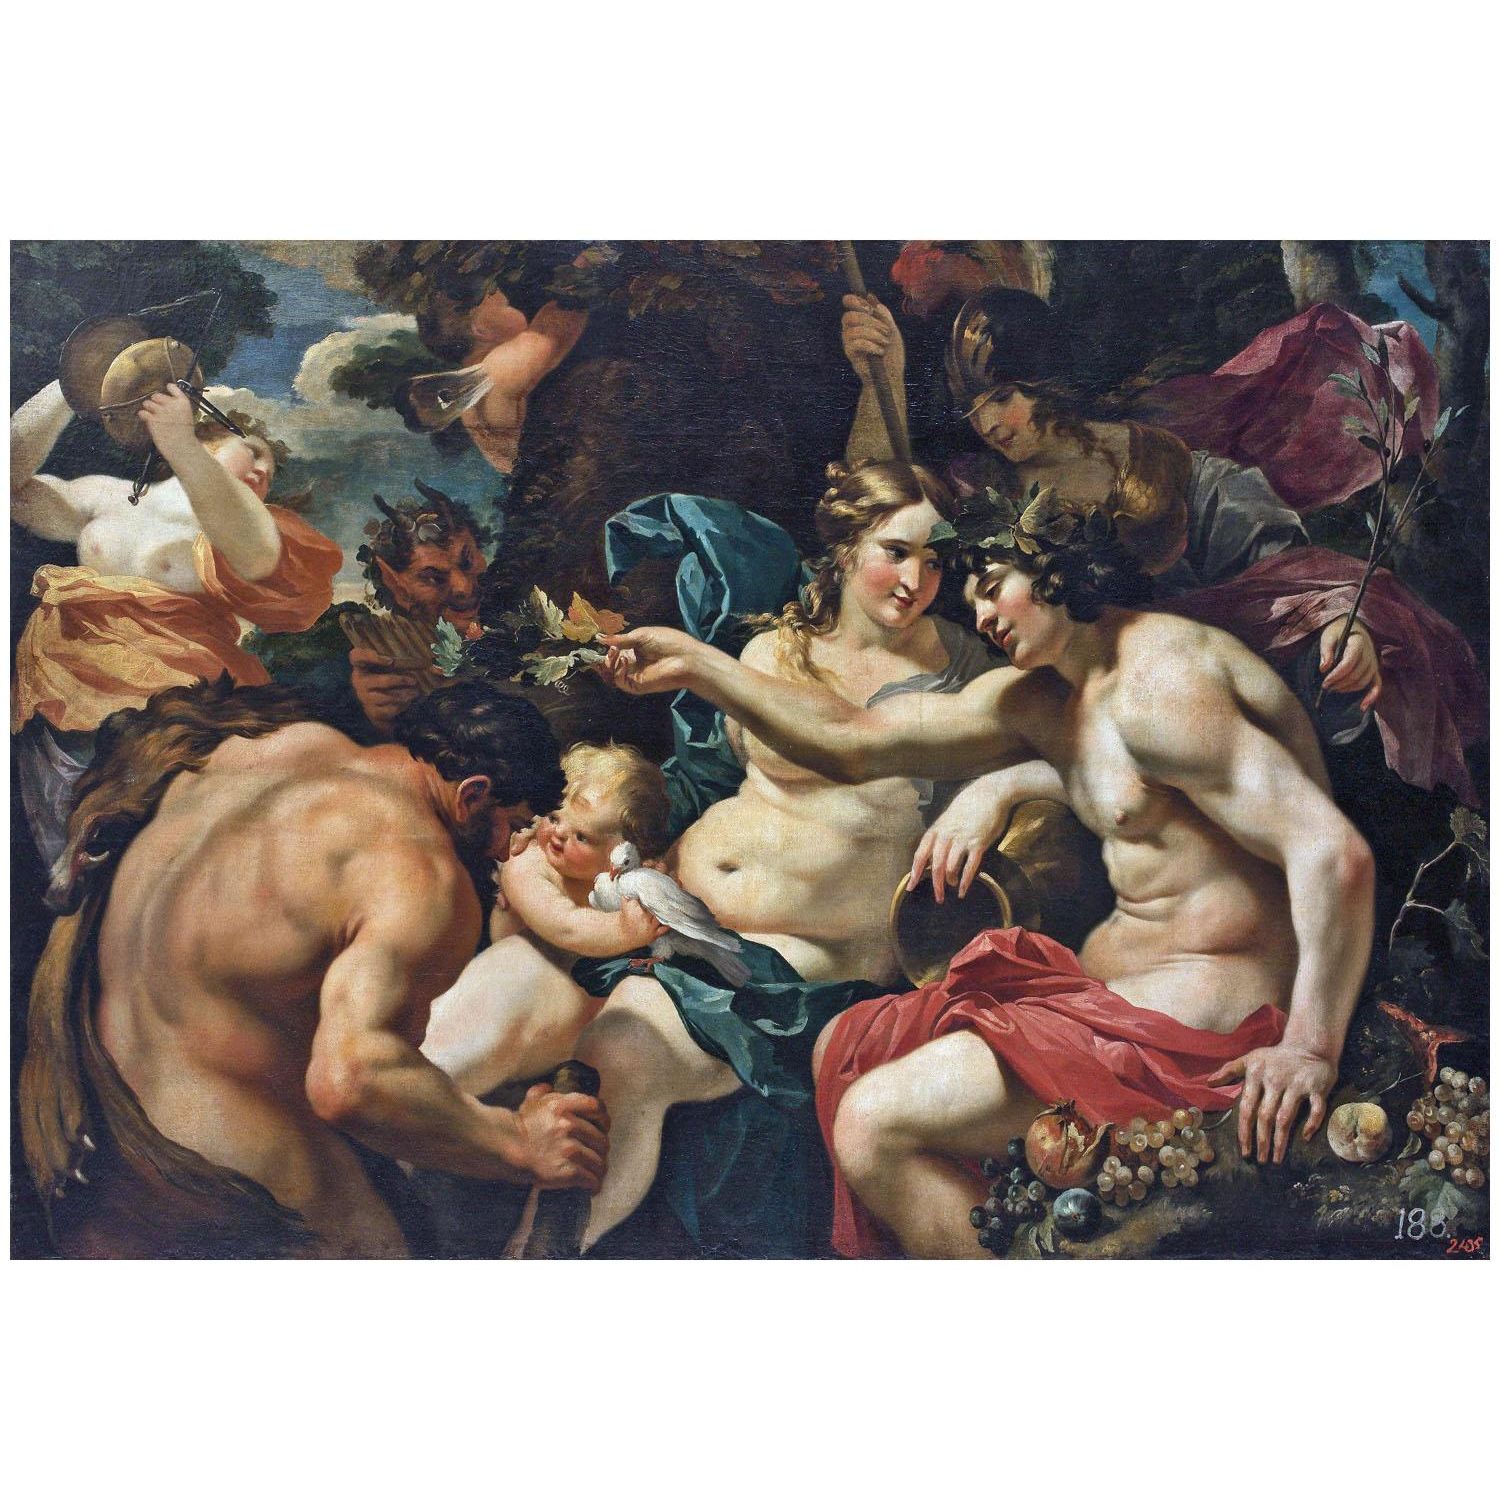 Simon Vouet. Hercule parmi les dieux de l'Olympe. 1640-1650. Hermitage Museum